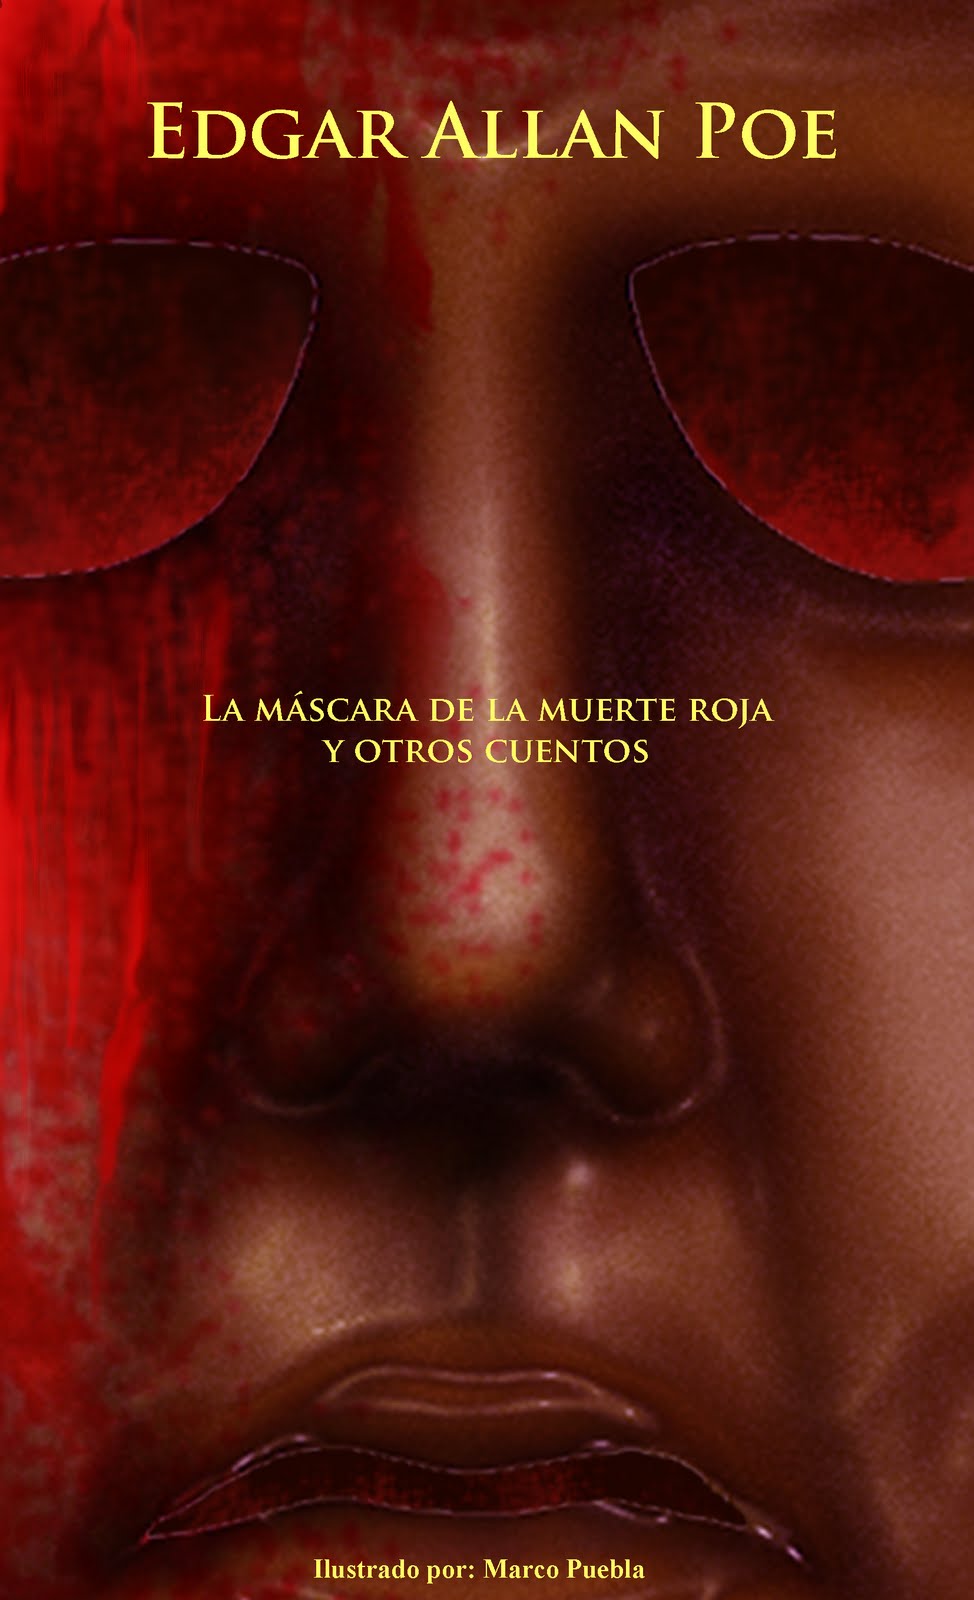 12 máscaras asesinas del cine La+mascara+de+la+muerte+roja+2